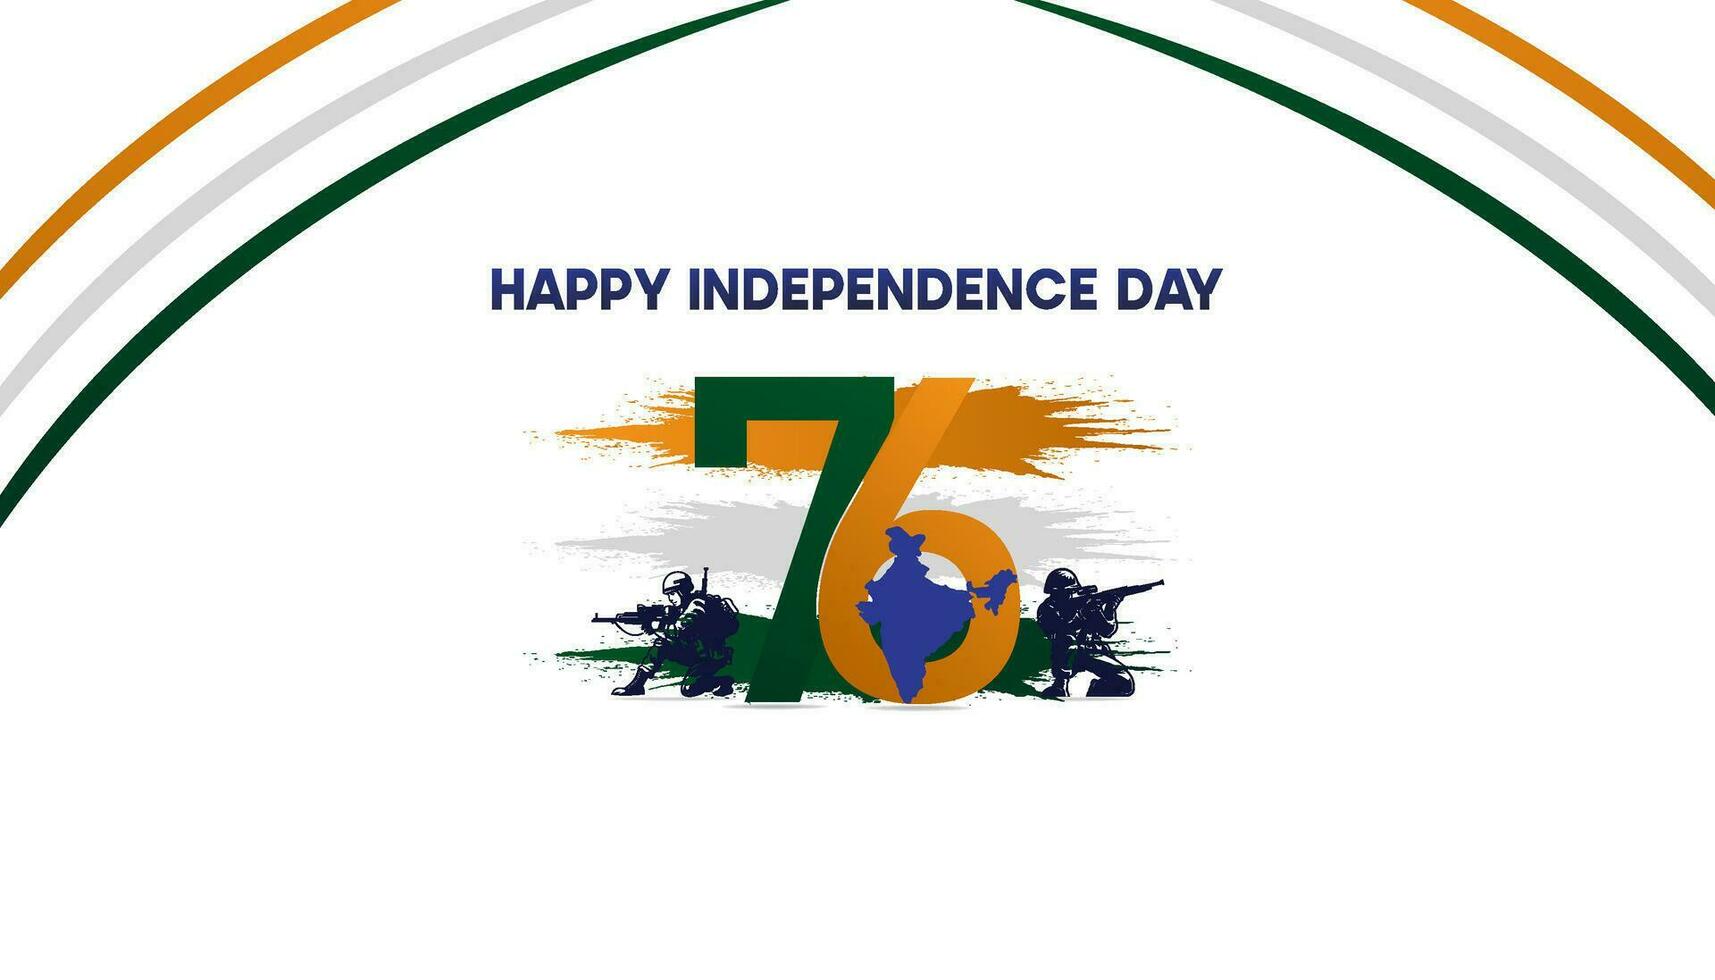 Índia independência dia. bandeira, vetor ilustração do 15º agosto. Projeto. poster. modelo. social meios de comunicação Postagens.